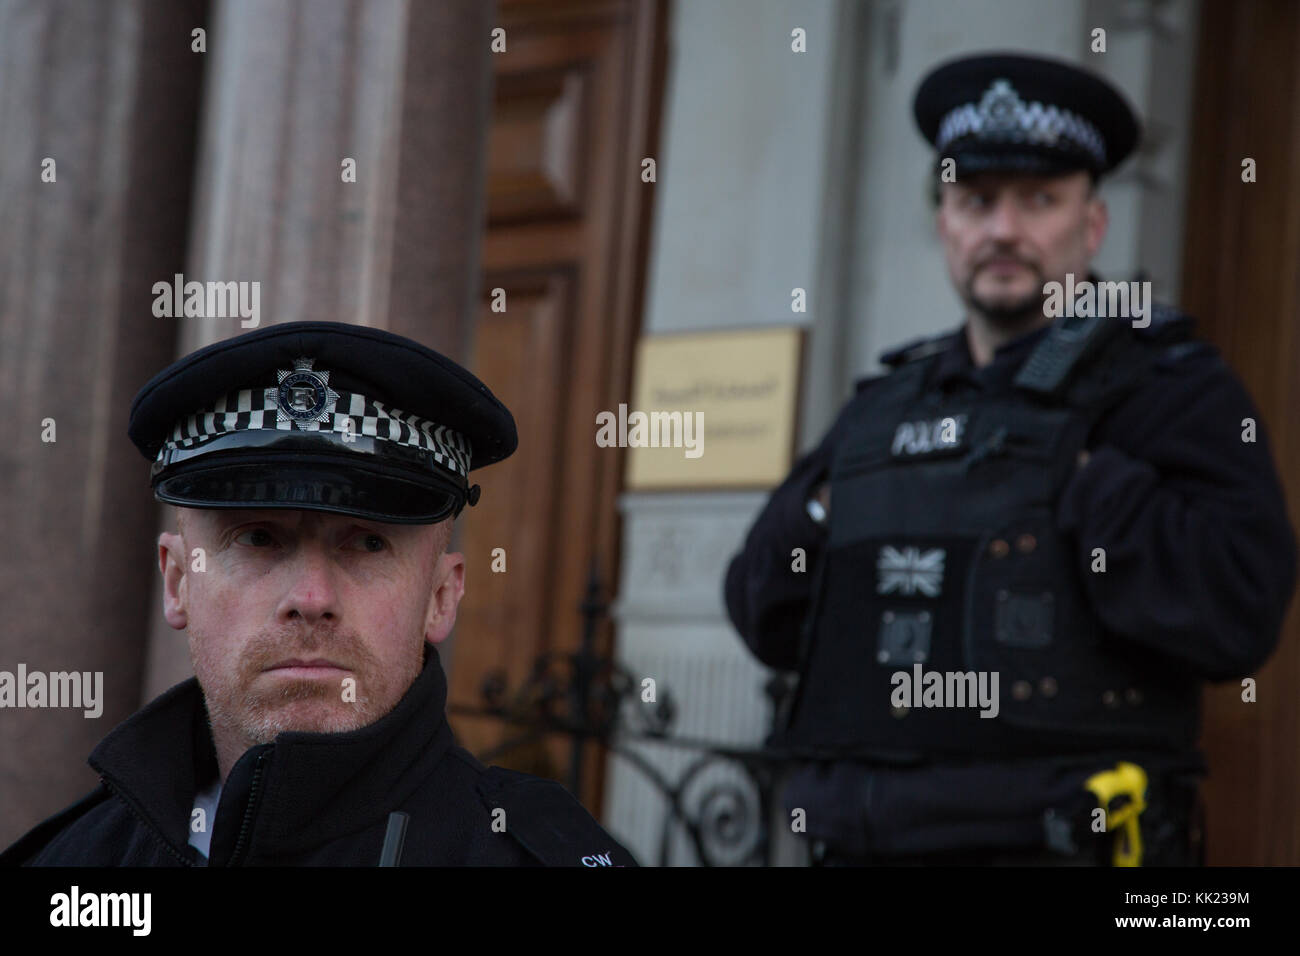 London UK 26 novembre 2017 à l'extérieur de la police l'ambassade de Libye à Londres comme recueillir des manifestants à la suite des rapports sur les ventes aux enchères d'esclaves migrants en Libye Banque D'Images